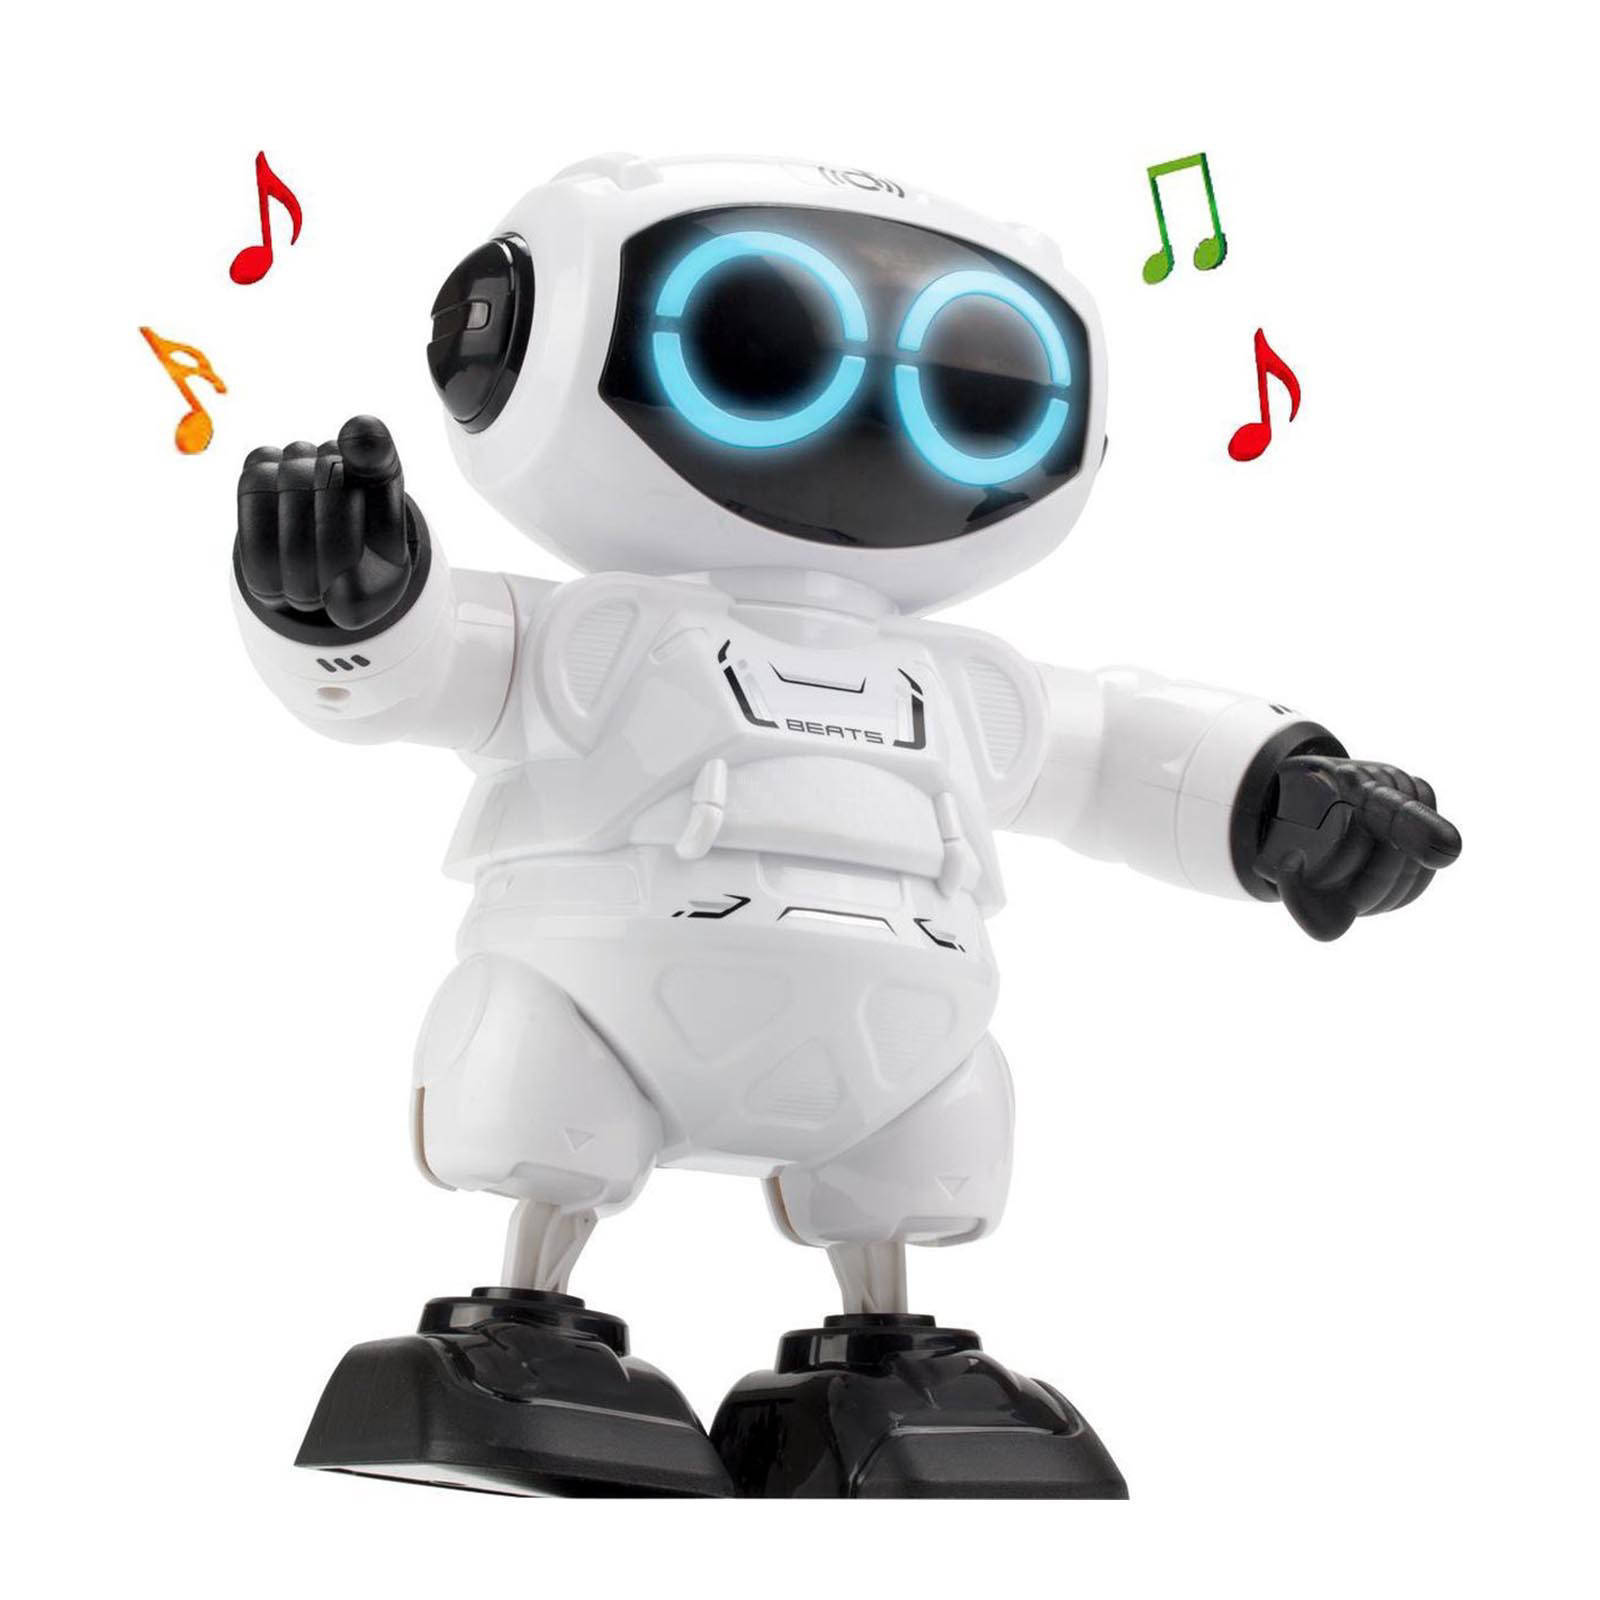 Silverlit Speelgoedrobot Robo Beats online kopen